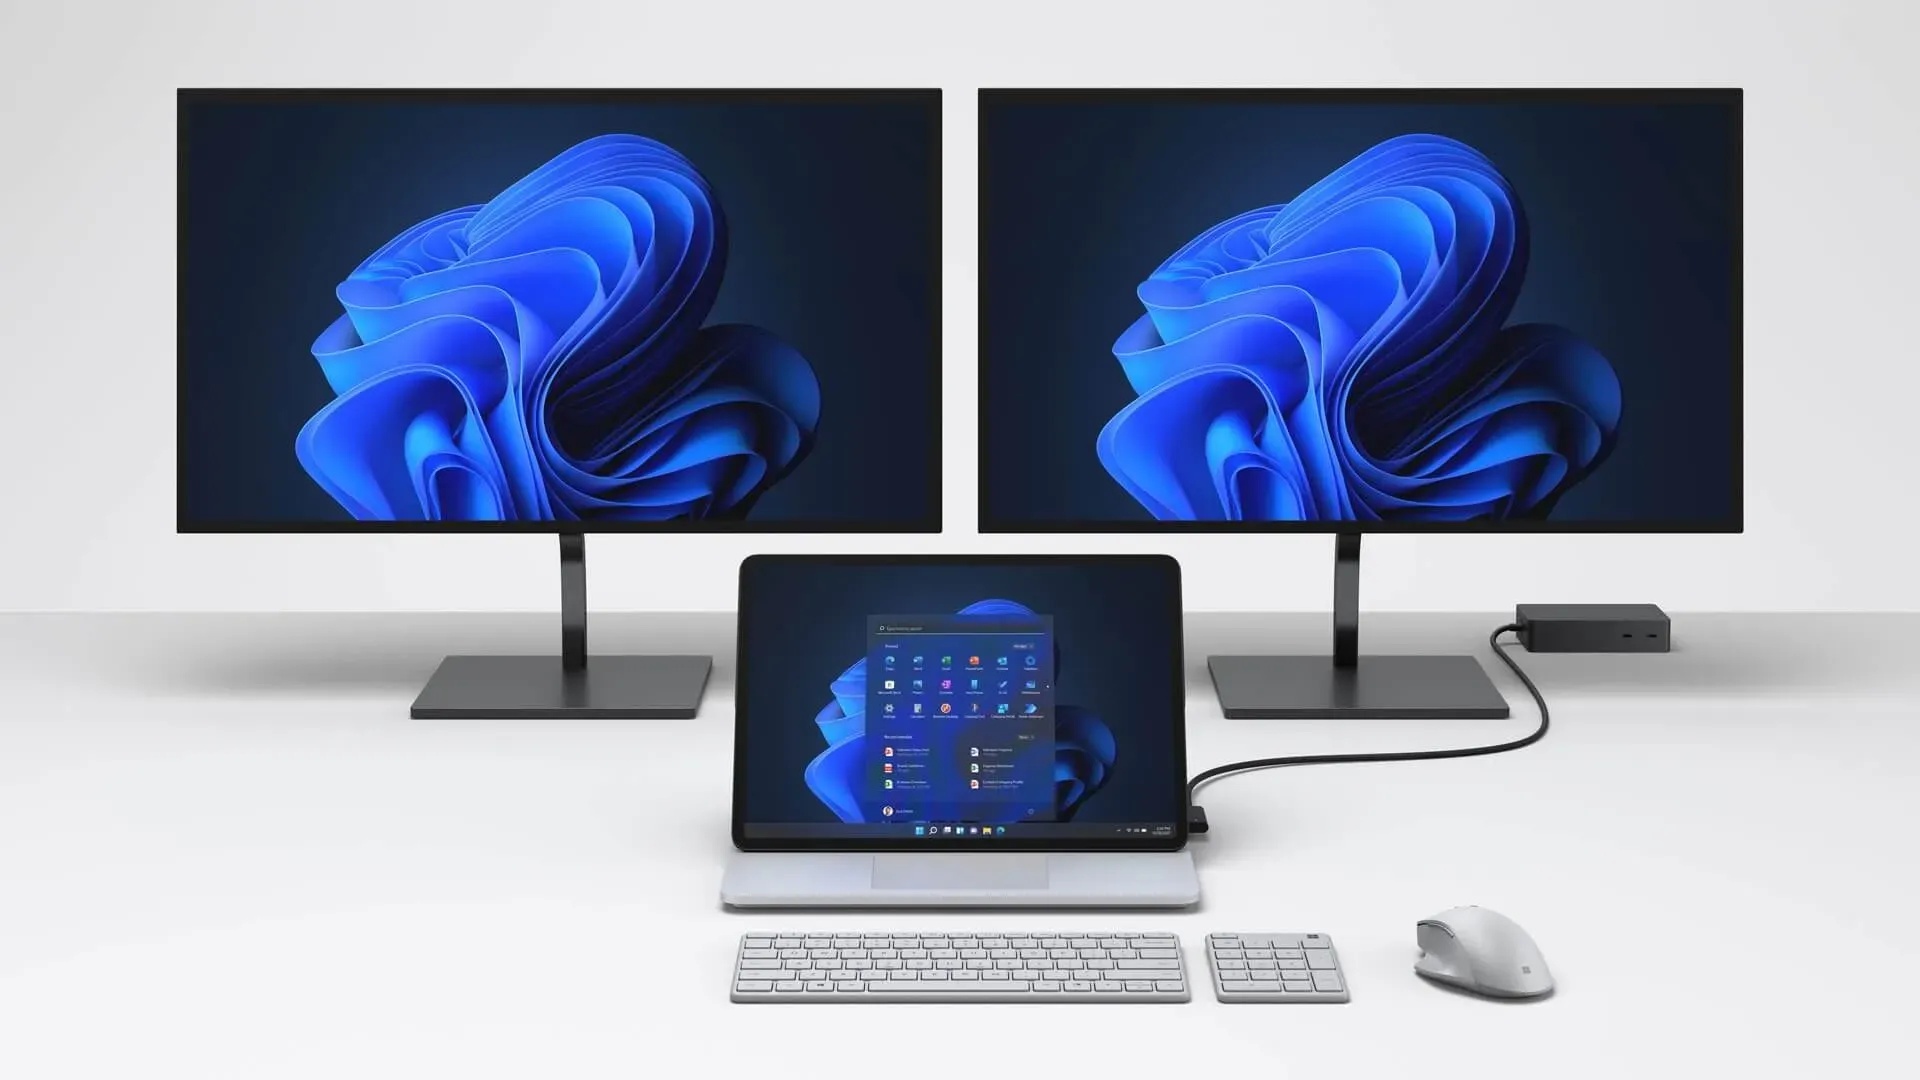 Angebliches Microsoft Surface Studio 3 vor der Markteinführung im Oktober bei der FCC gesichtet